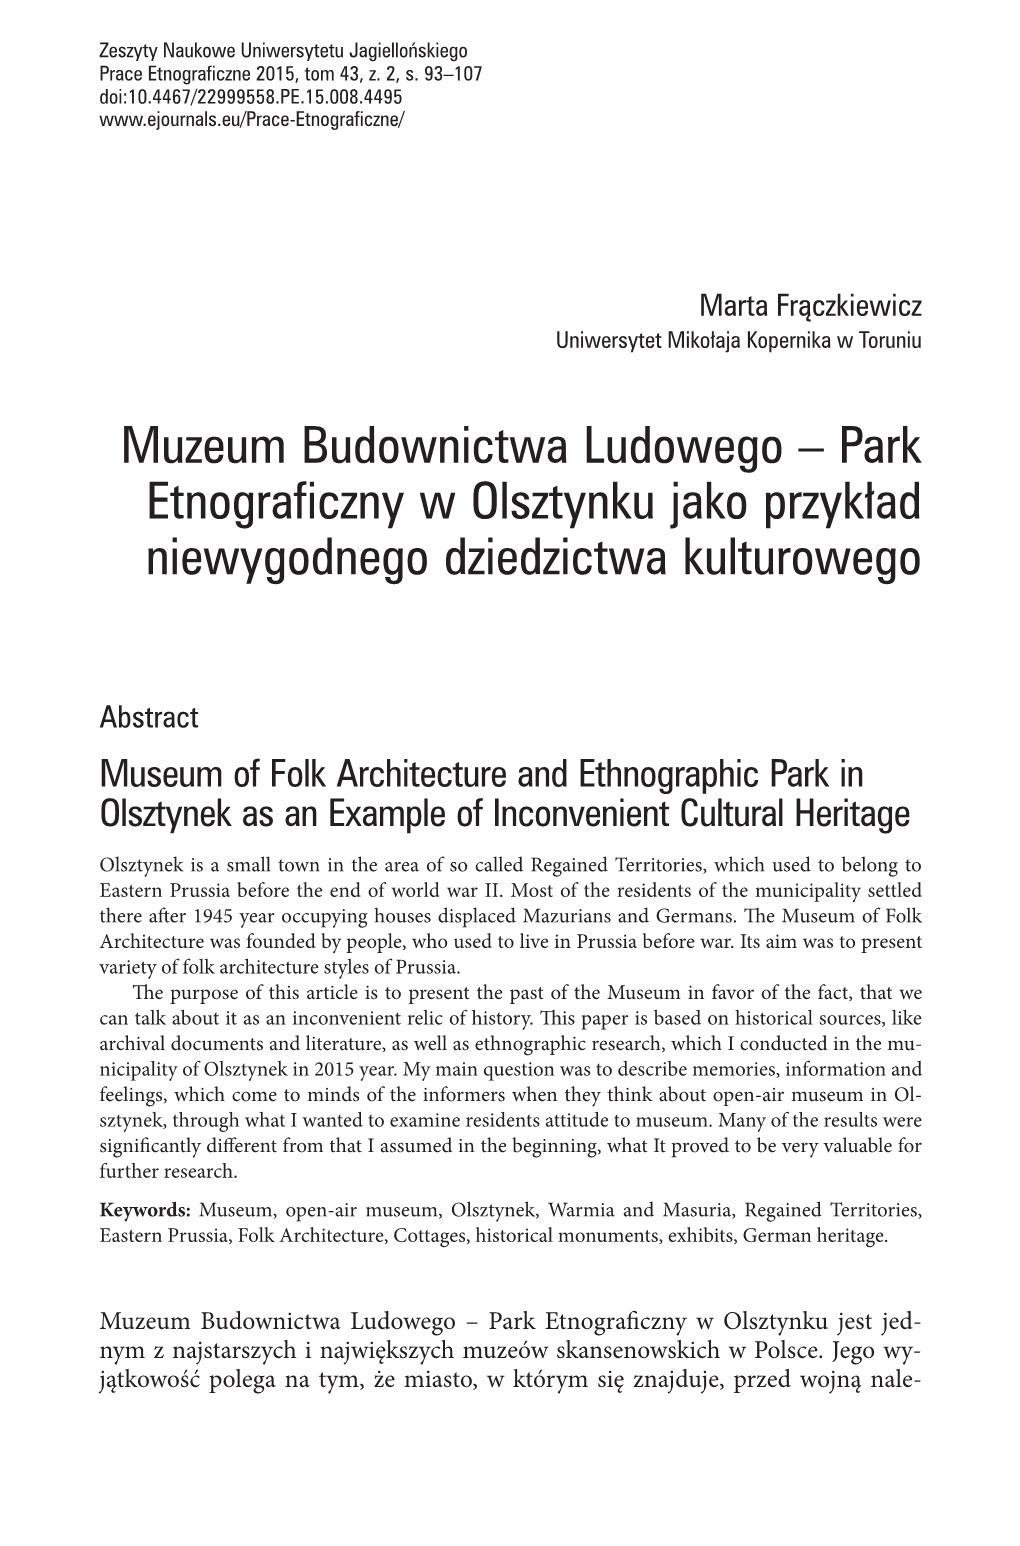 Muzeum Budownictwa Ludowego – Park Etnograficzny W Olsztynku Jako Przykład Niewygodnego Dziedzictwa Kulturowego